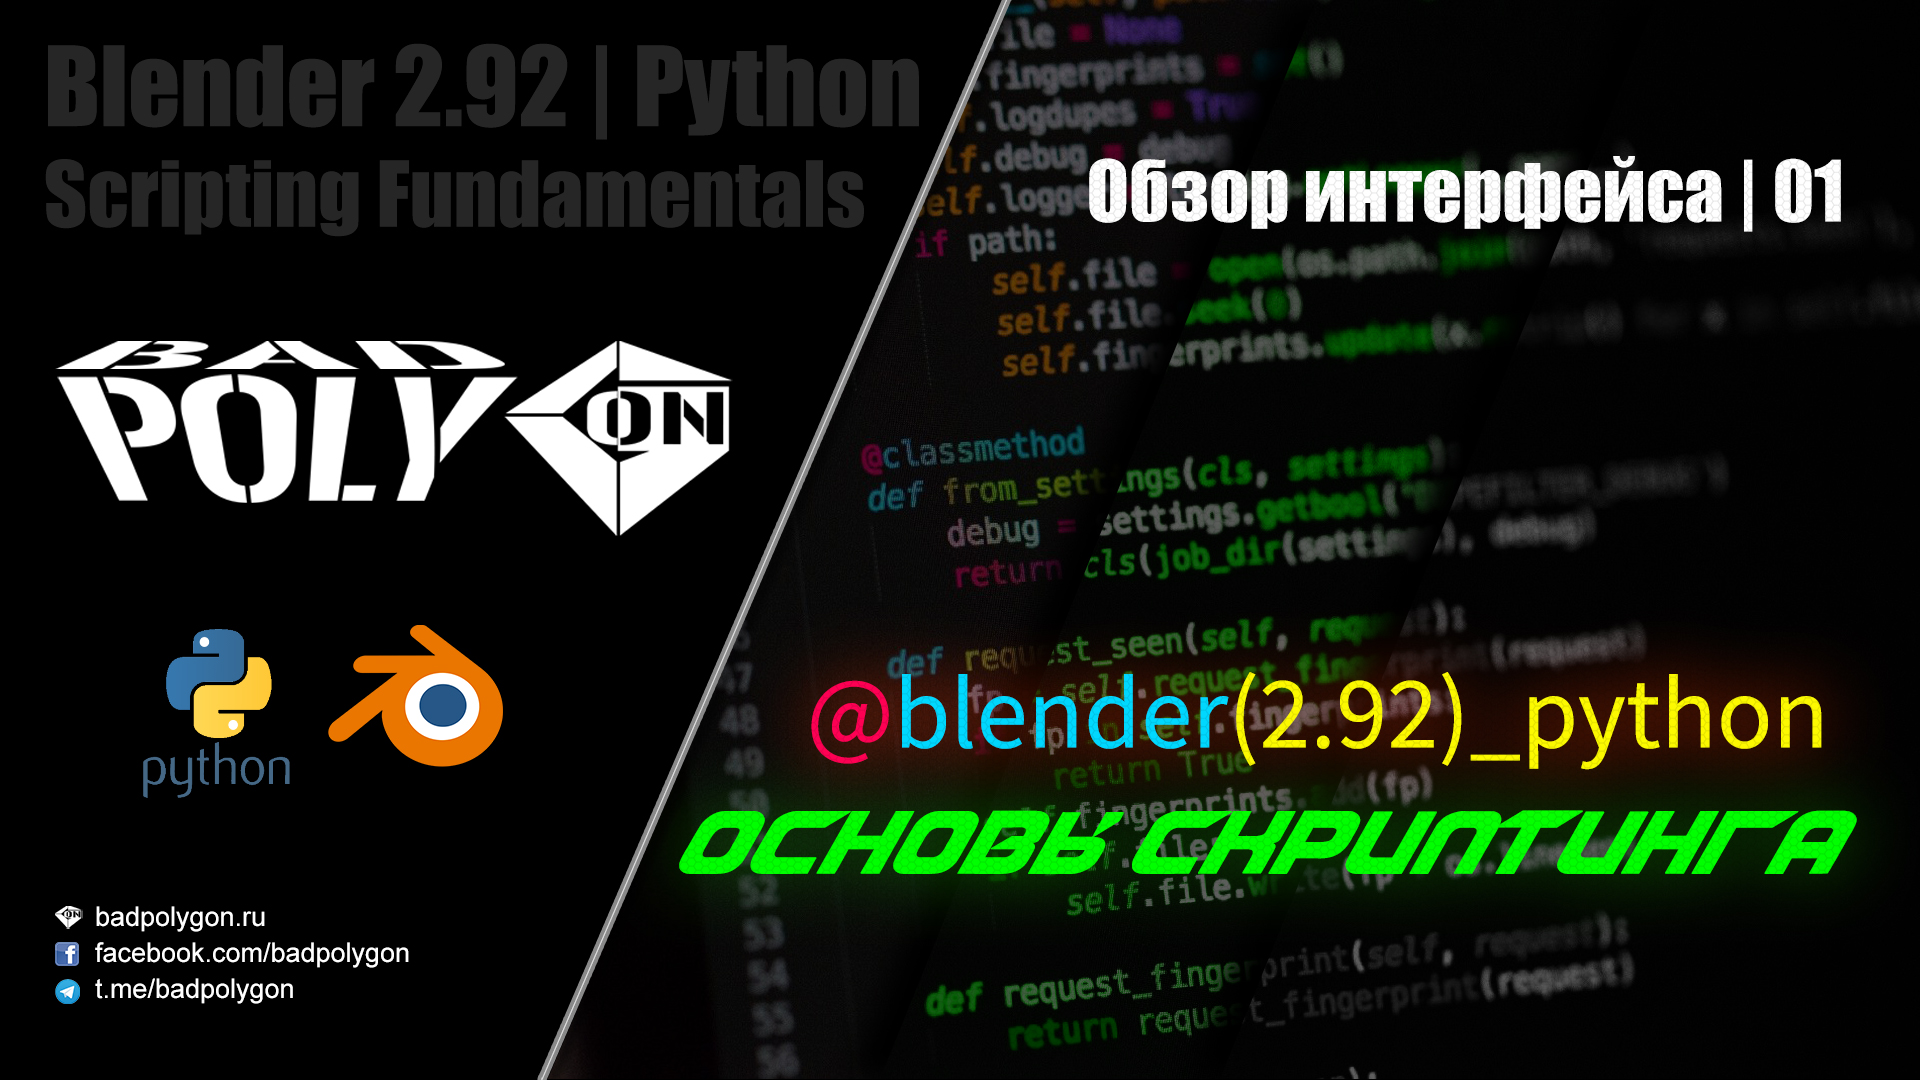 Blender python scripting. Скриптинг. Основы питон превью. Chr 92 Python.